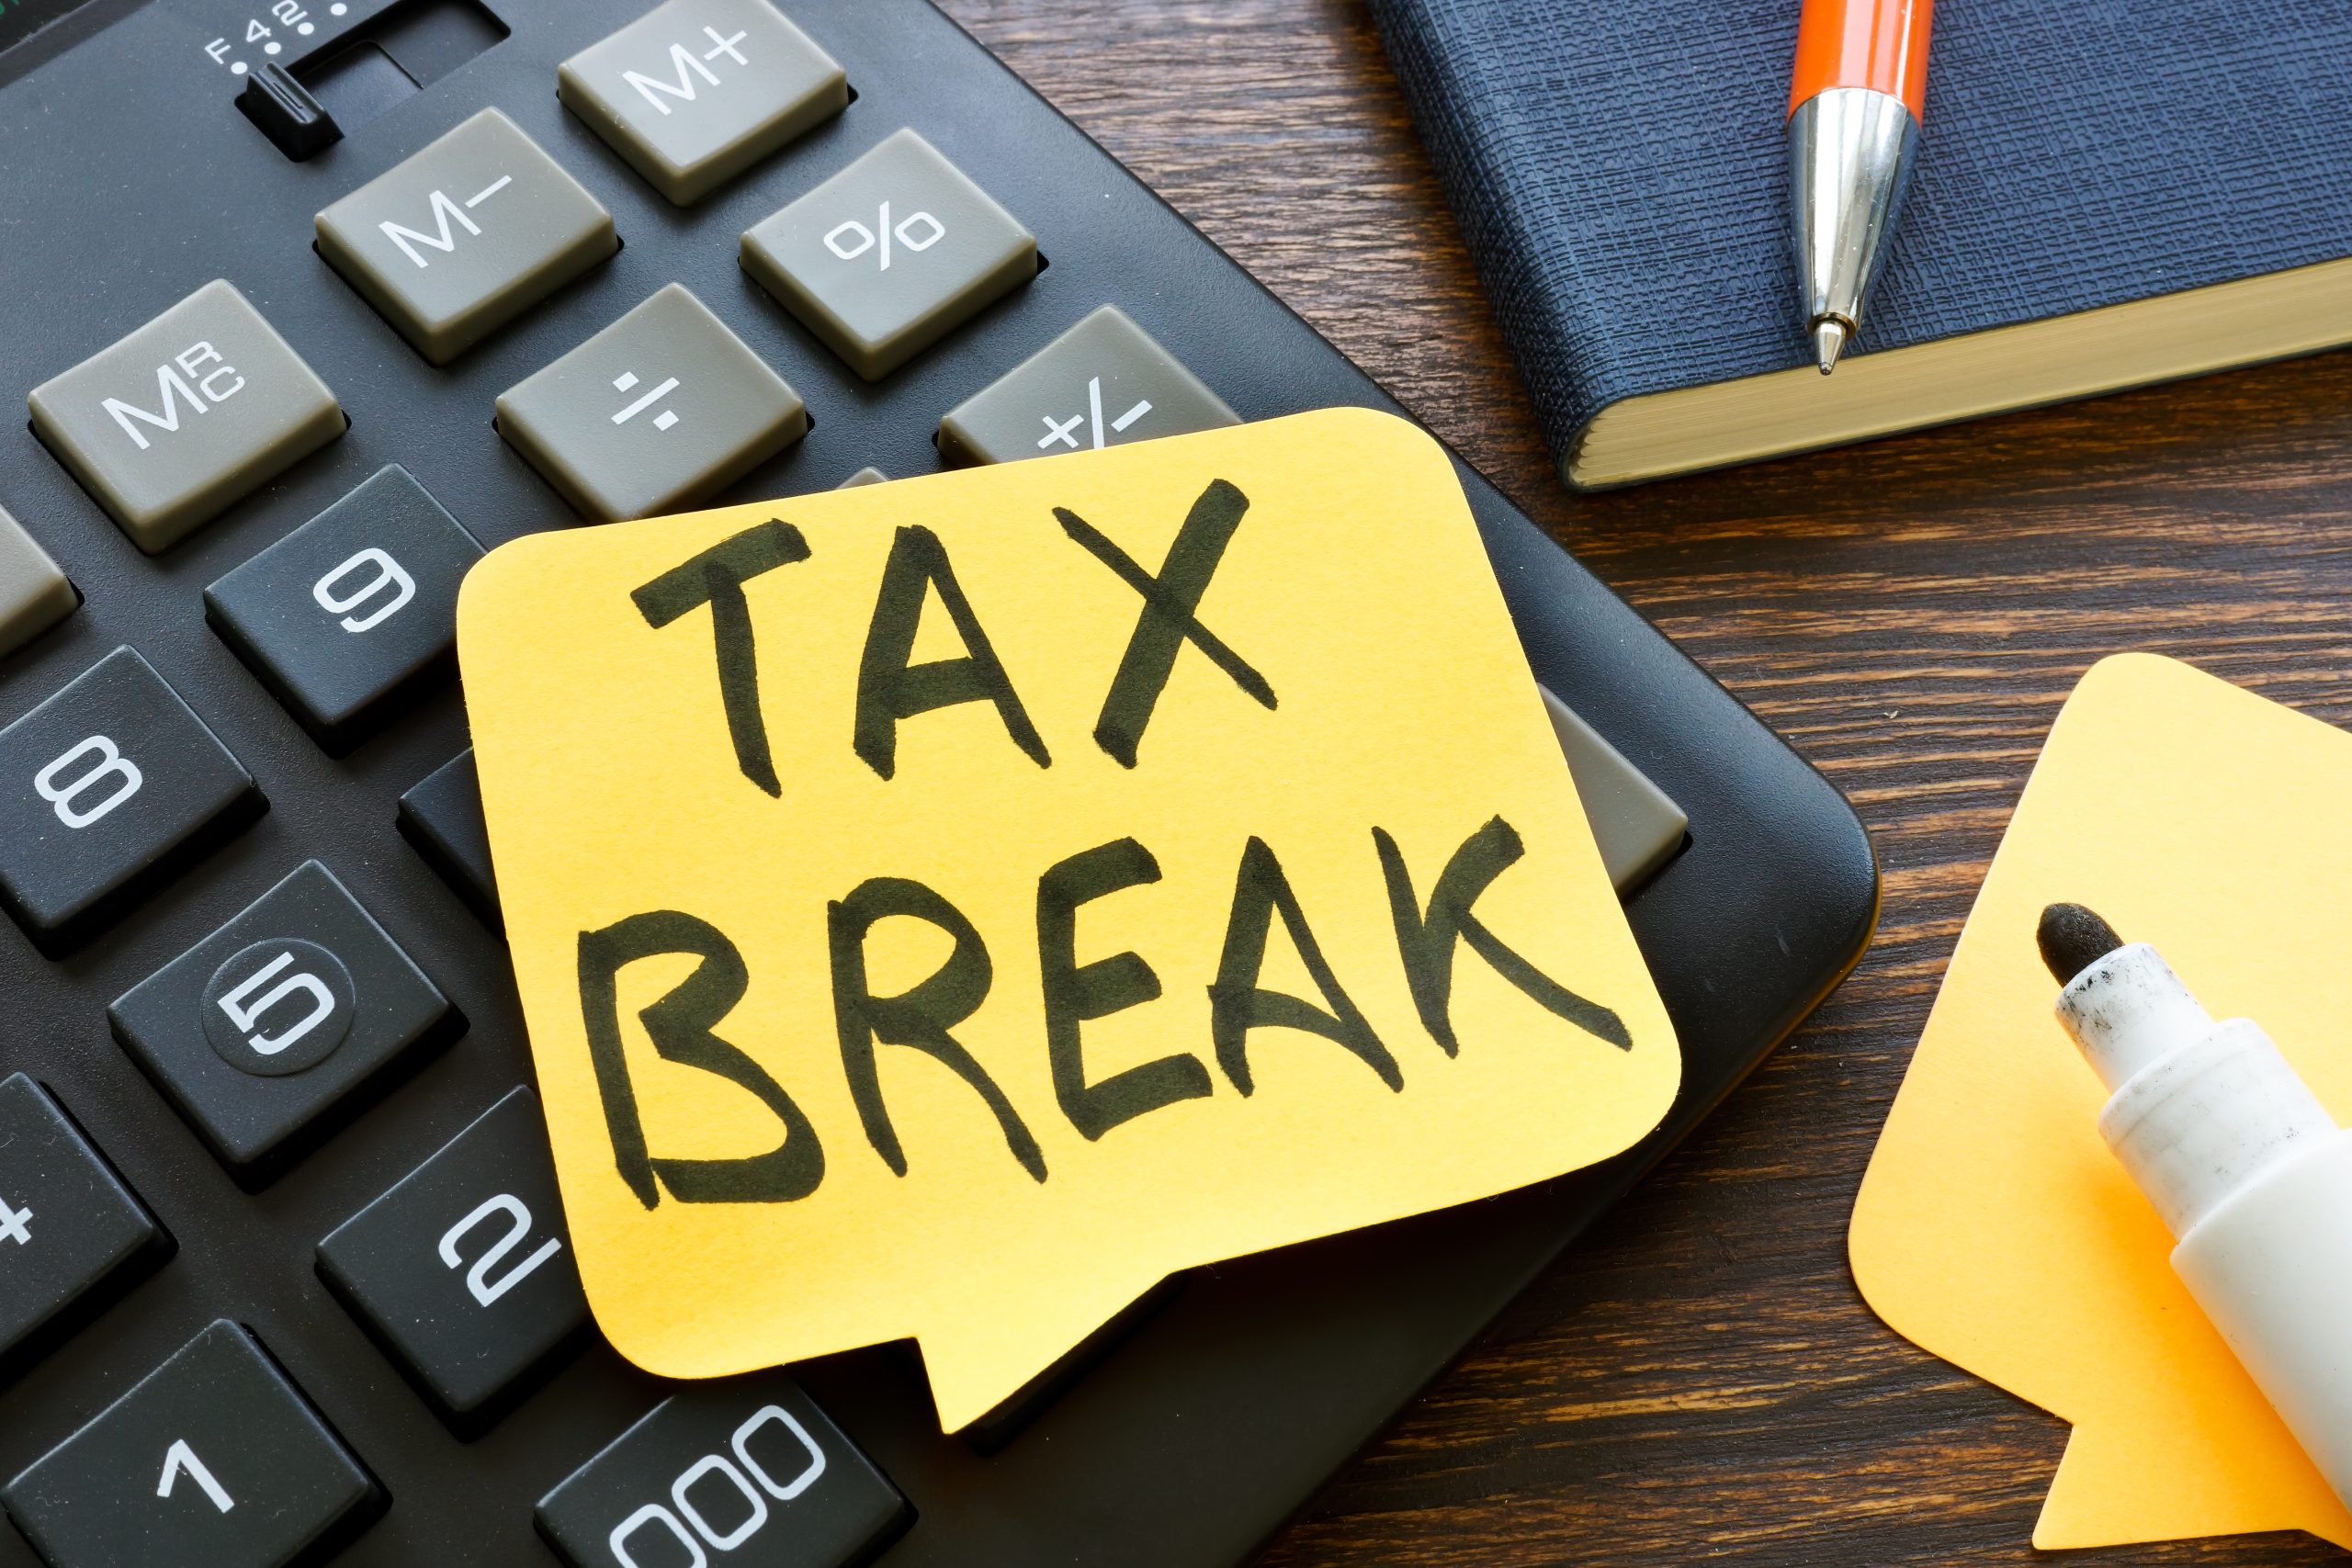 Tax break memo on the calculator and pen.